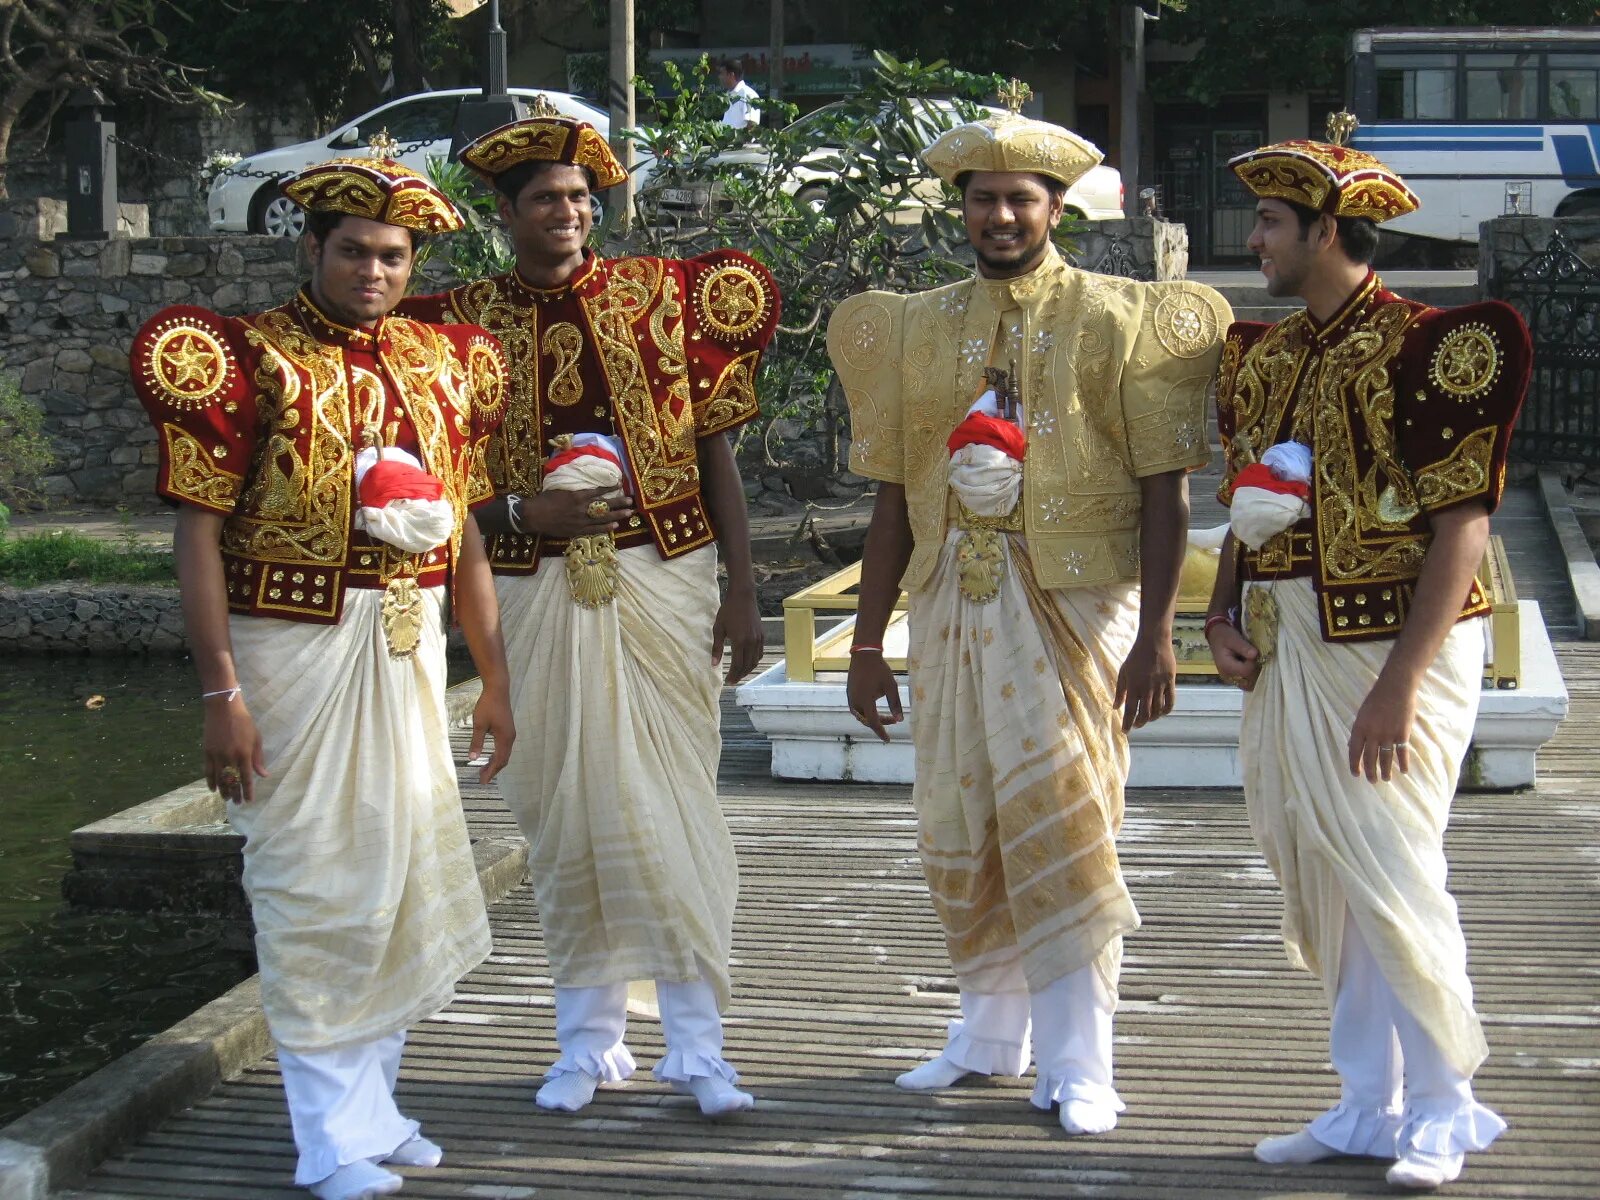 Шри ланка форма. Бюргеры Шри-Ланки. Шри Ланка национальный костюм. Народы Шри-Ланки сингалы. Шри Ланка нац костюм.